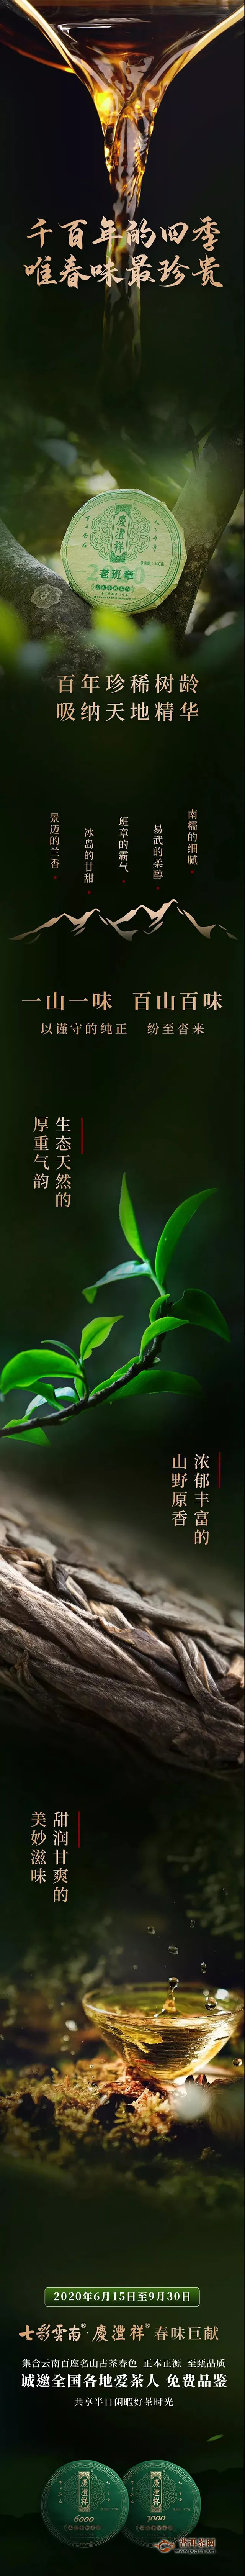 七彩云南庆沣祥全民品鉴招募，千百年的四季唯春味最珍贵